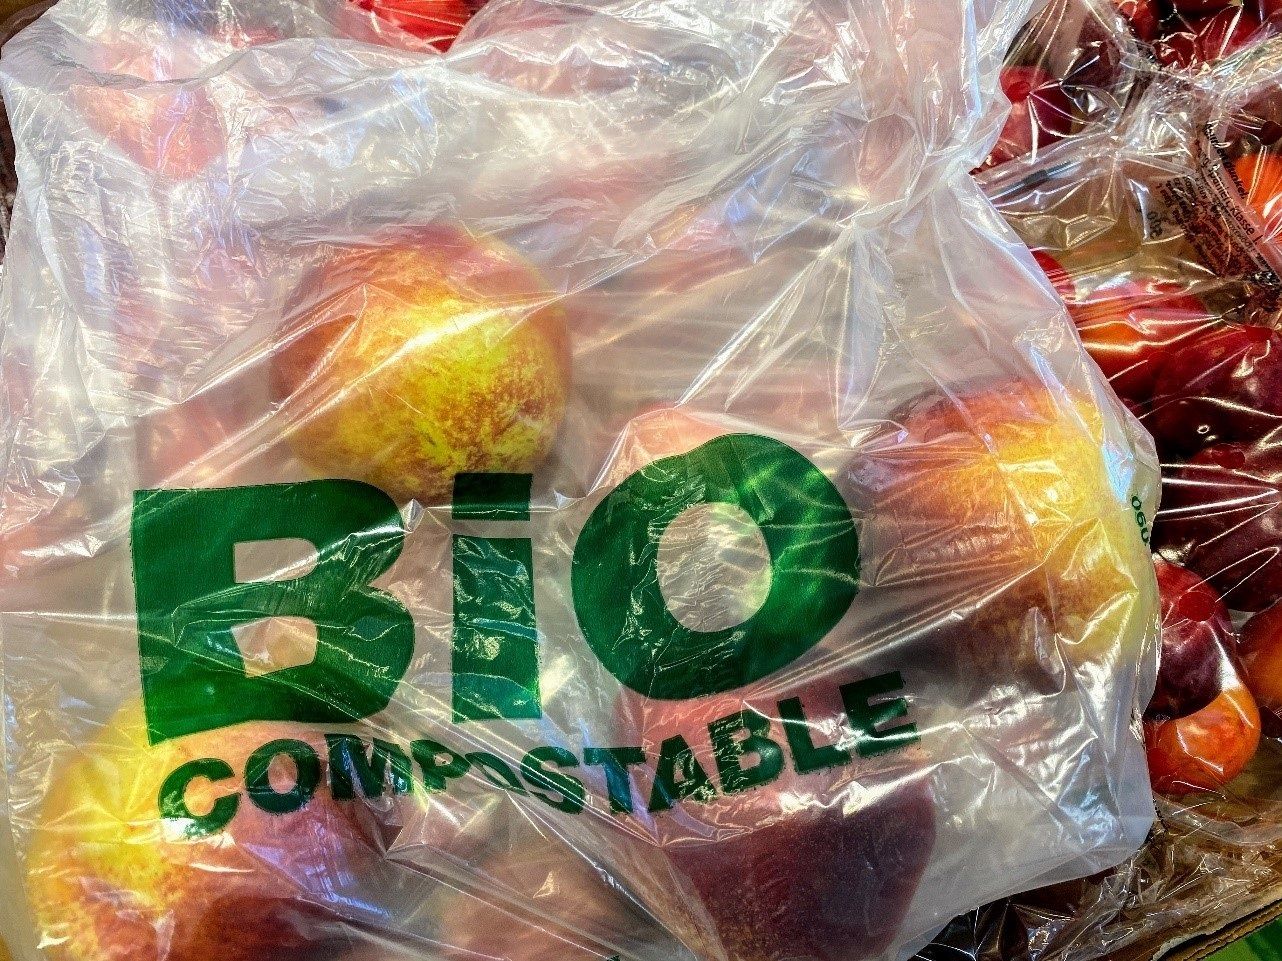 Las bolsas biodegradables son más tóxicas que las de plástico convencionales, según un estudio